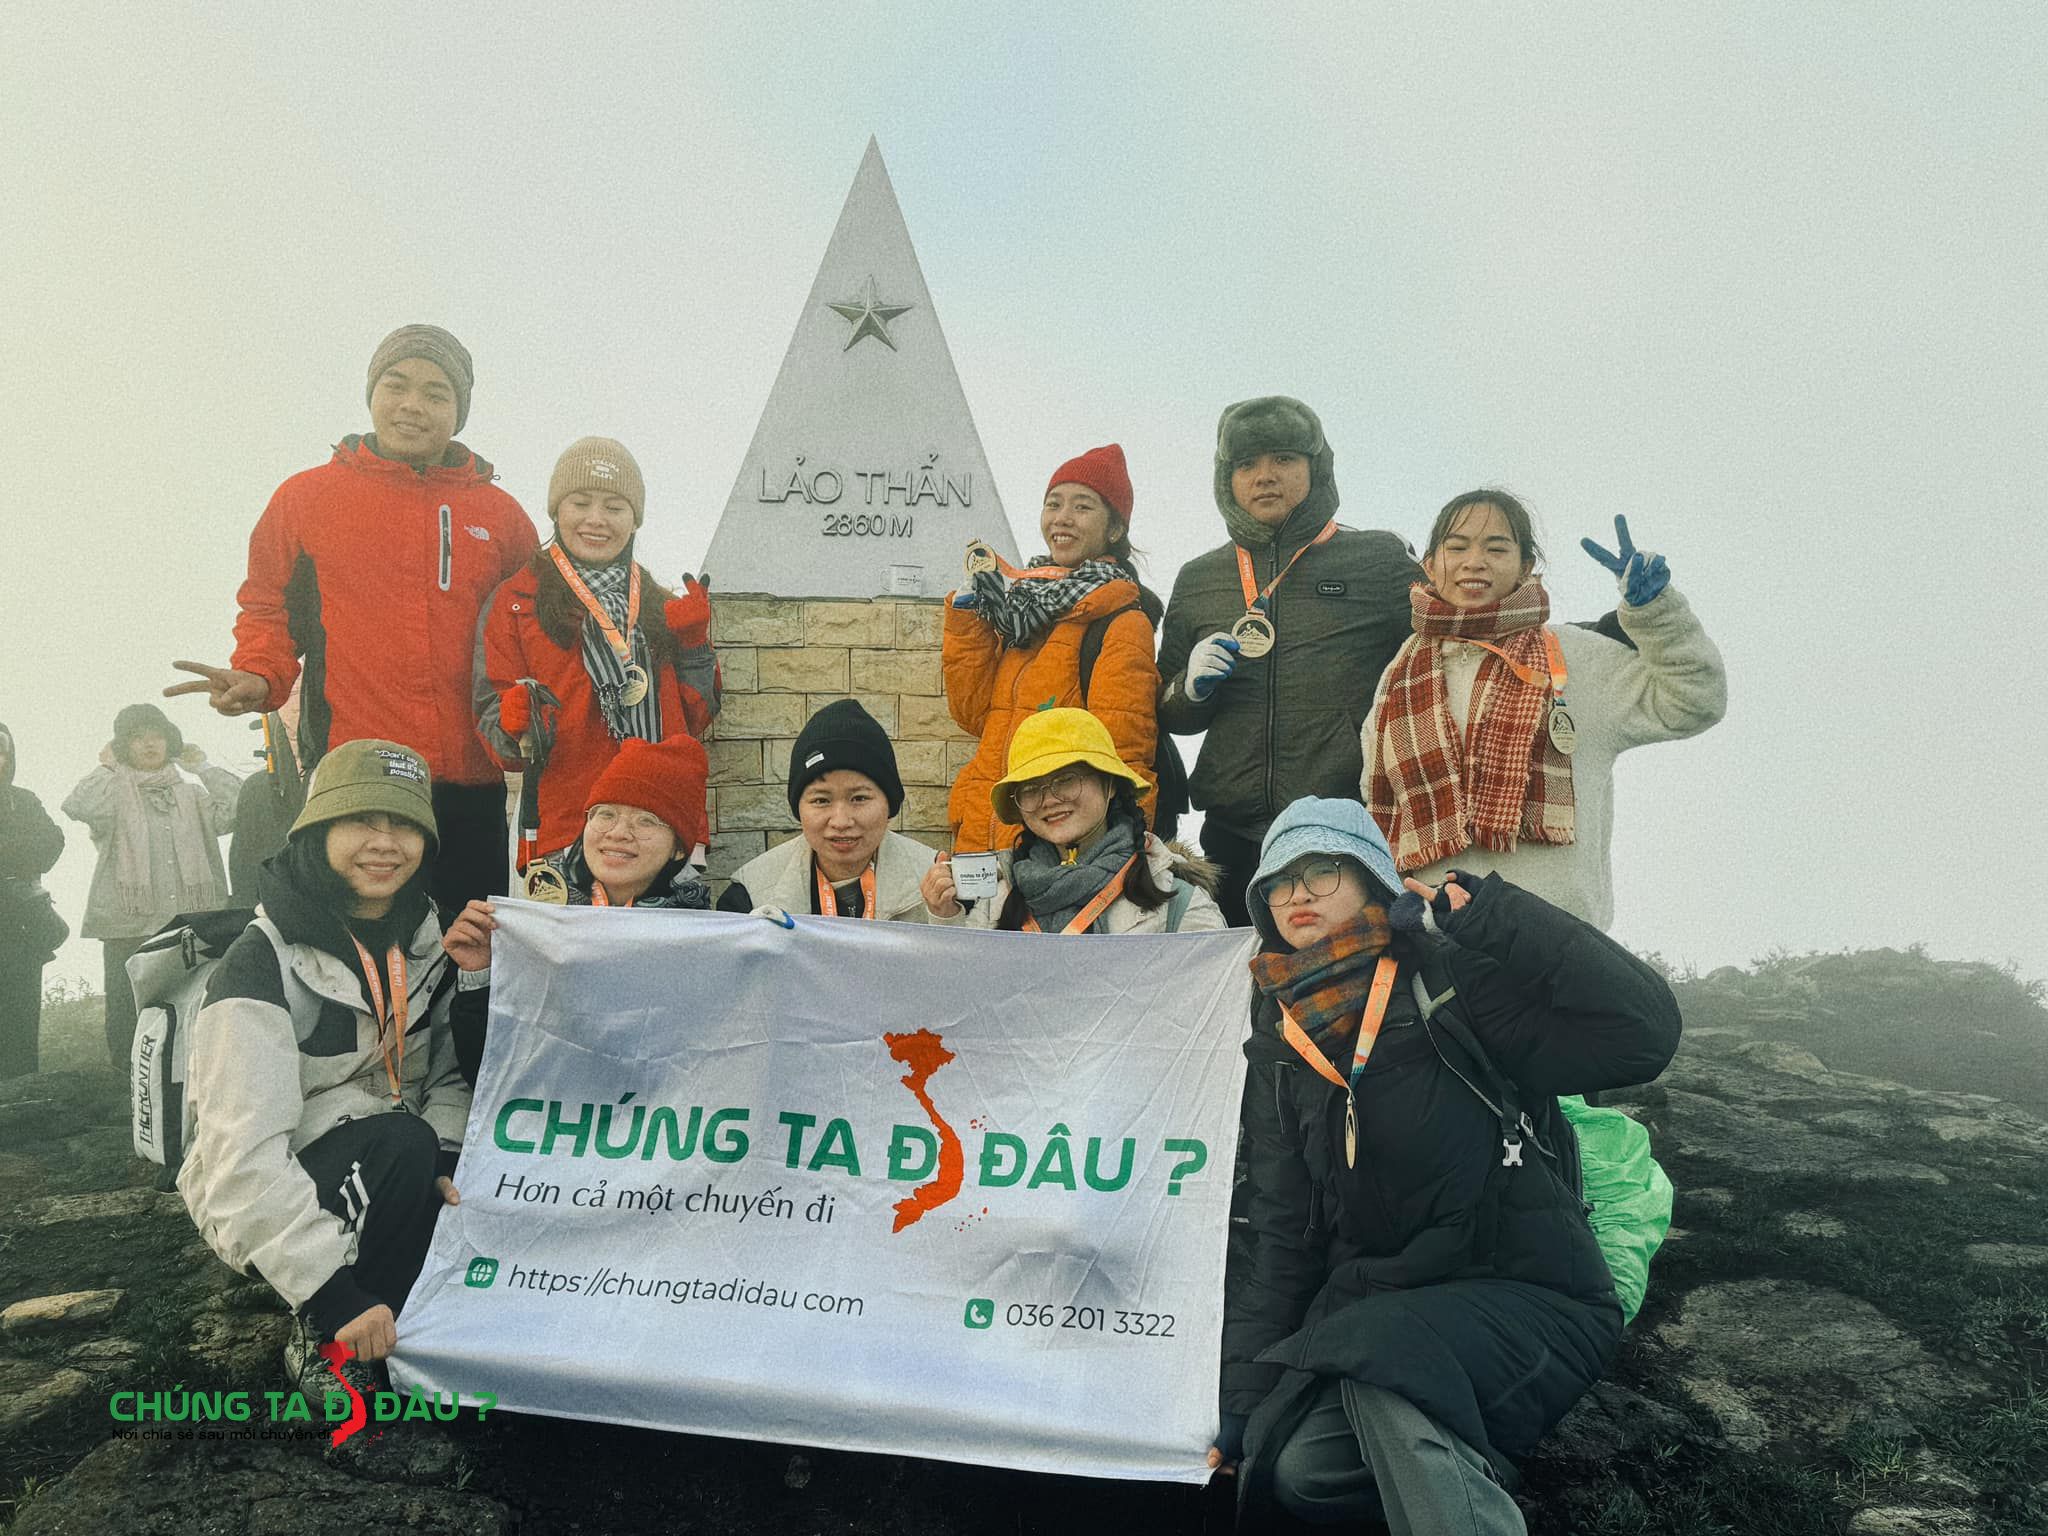 Cả đoàn chụp ảnh kỷ niệm trên chóp đỉnh Lảo Thẩn 2860m